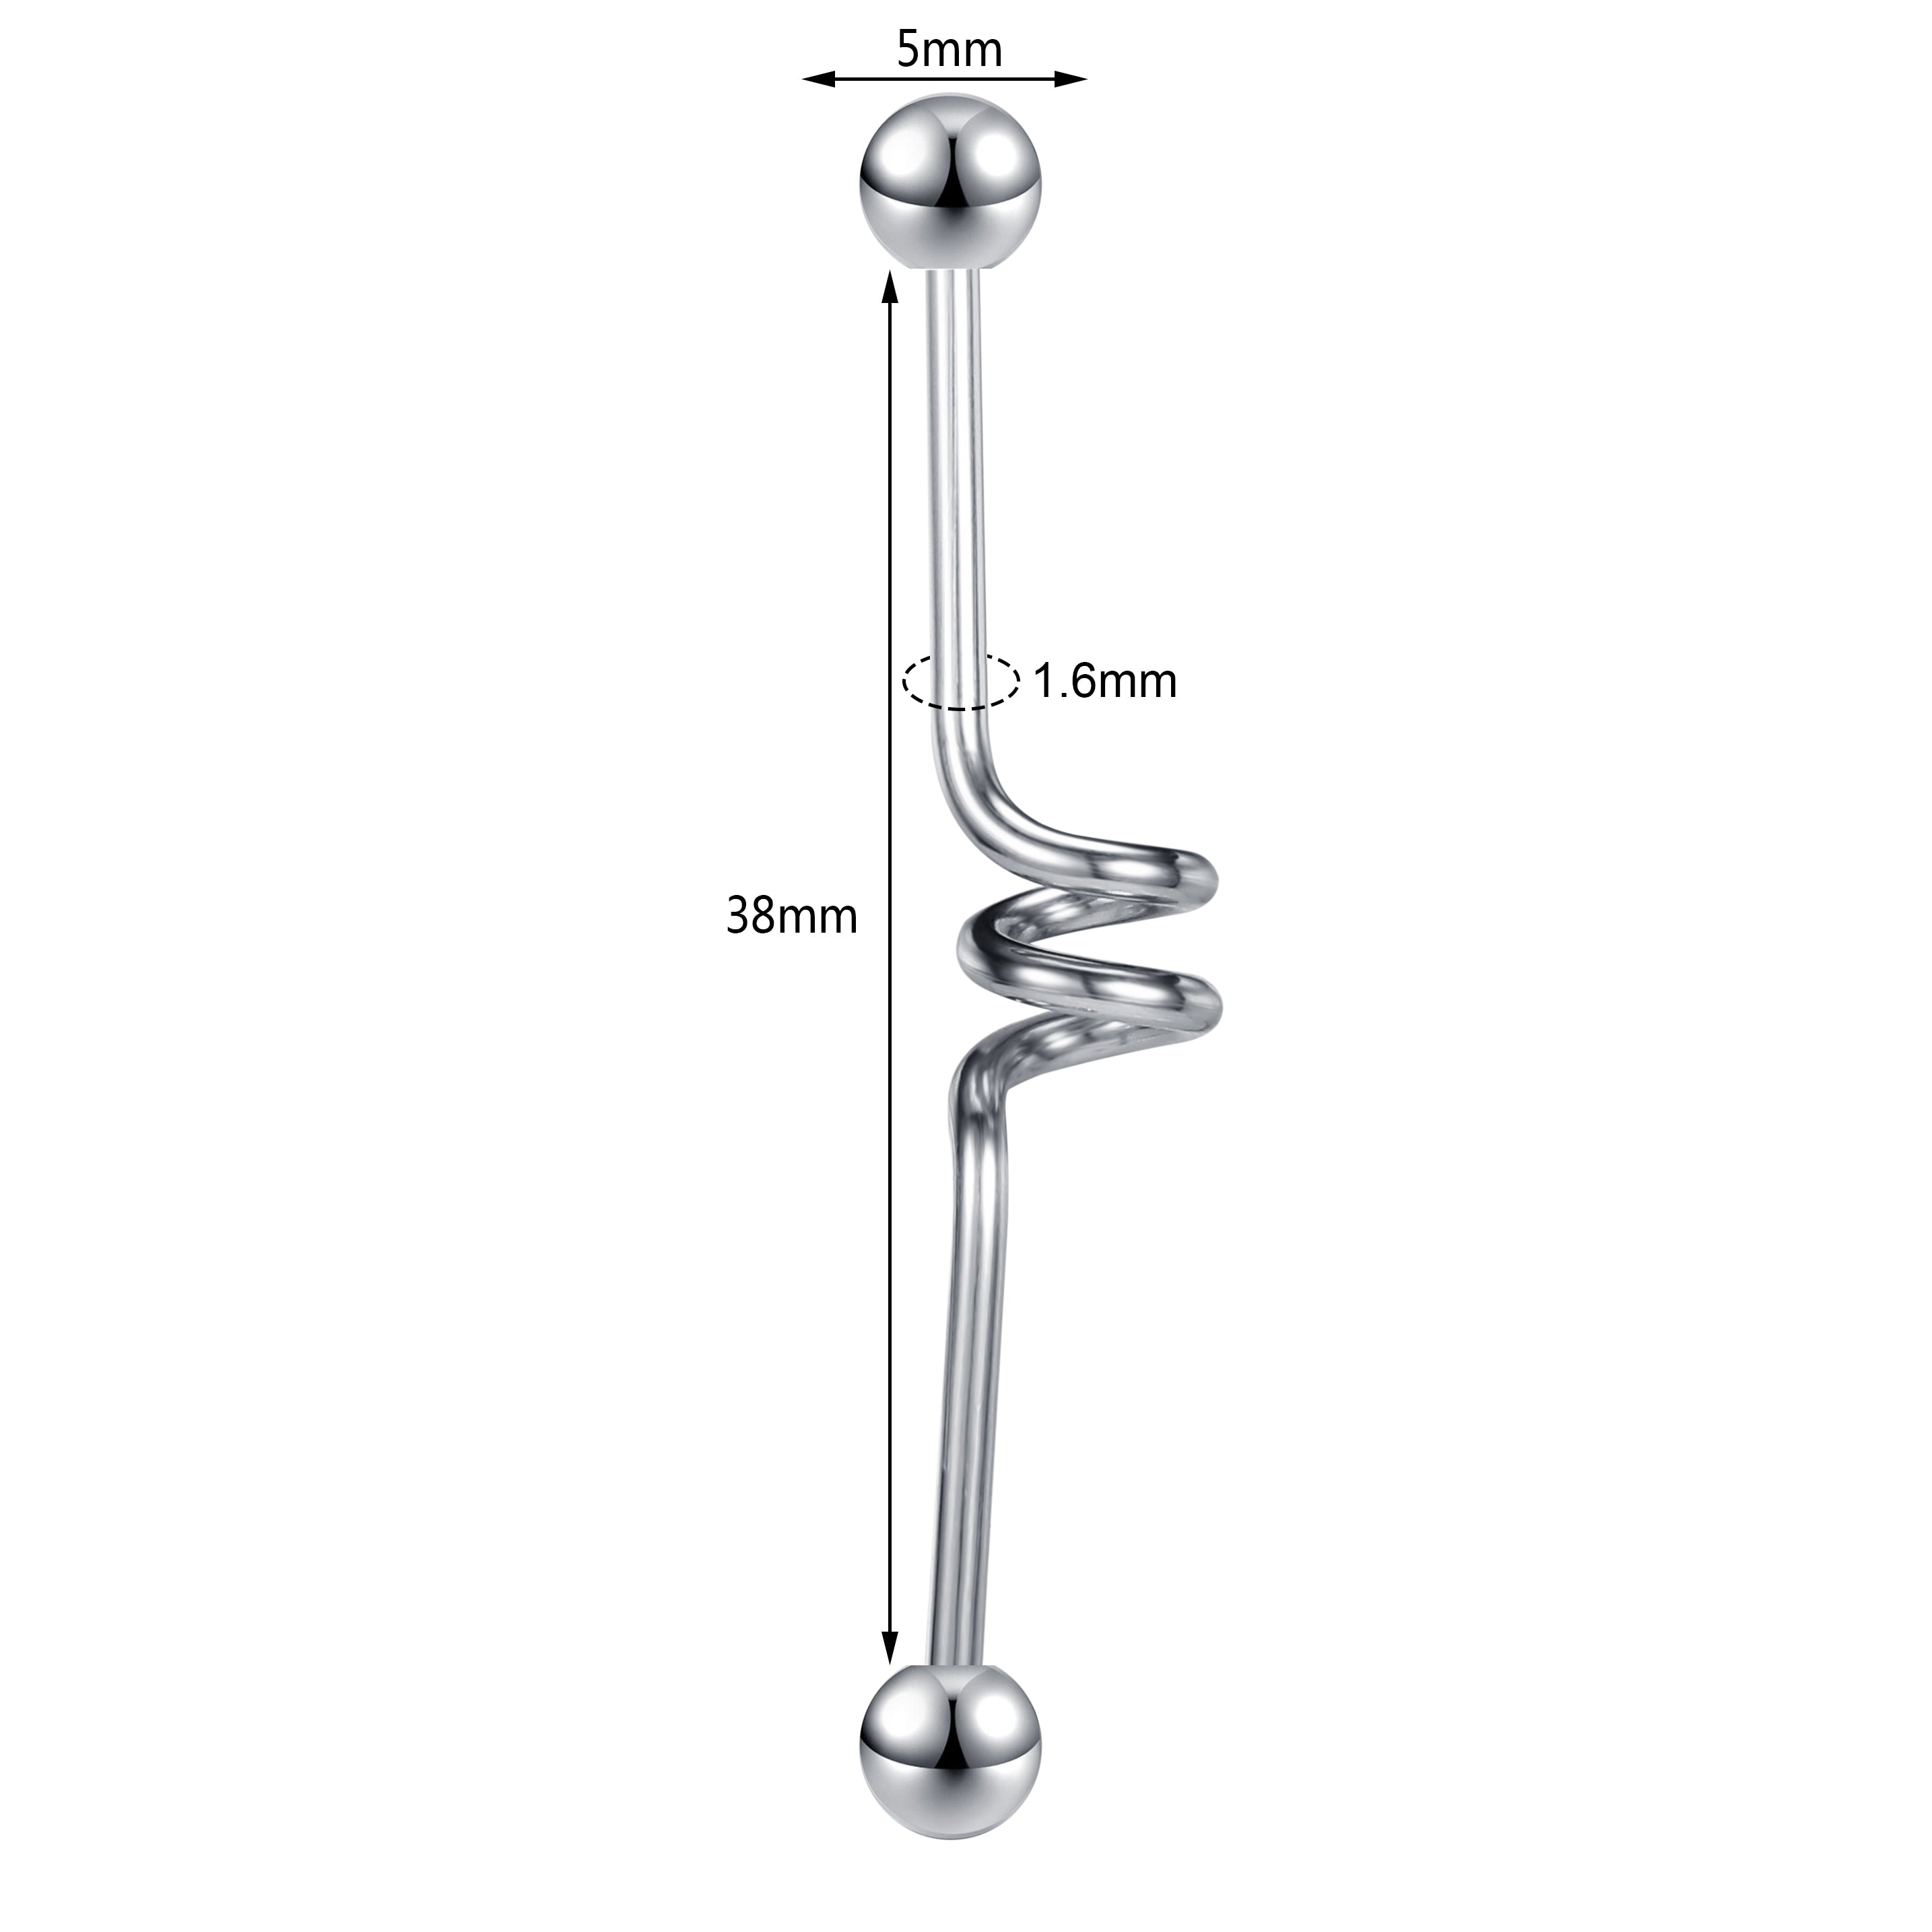 14g-ball-industrial-barbell-earring-bridge-ear-helix-piercing